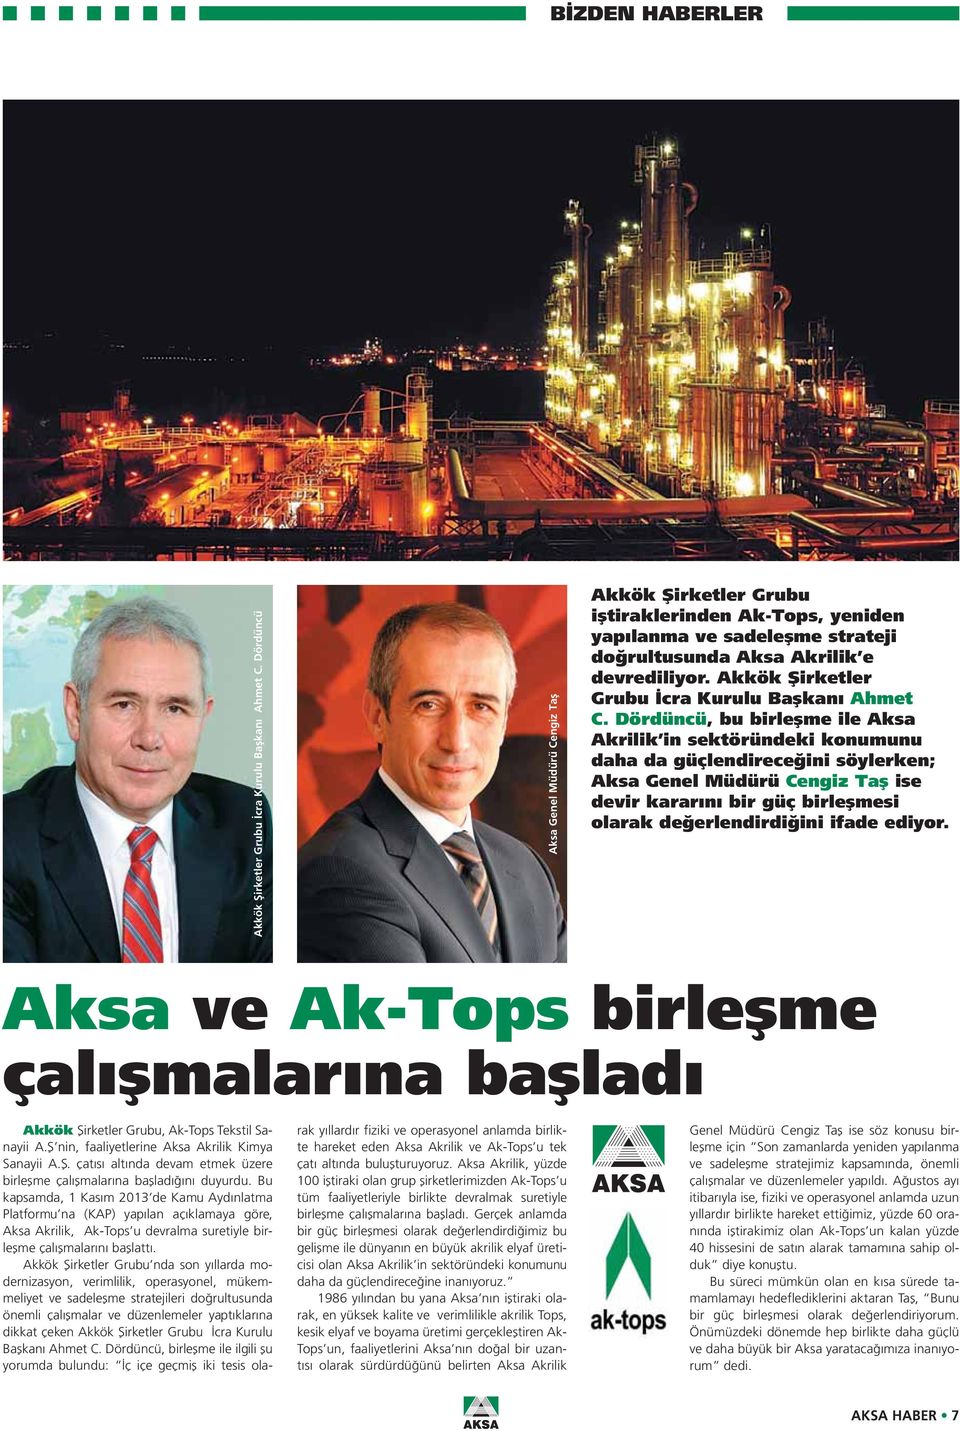 Akkök Şirketler Grubu İcra Kurulu Başkanı Ahmet C.